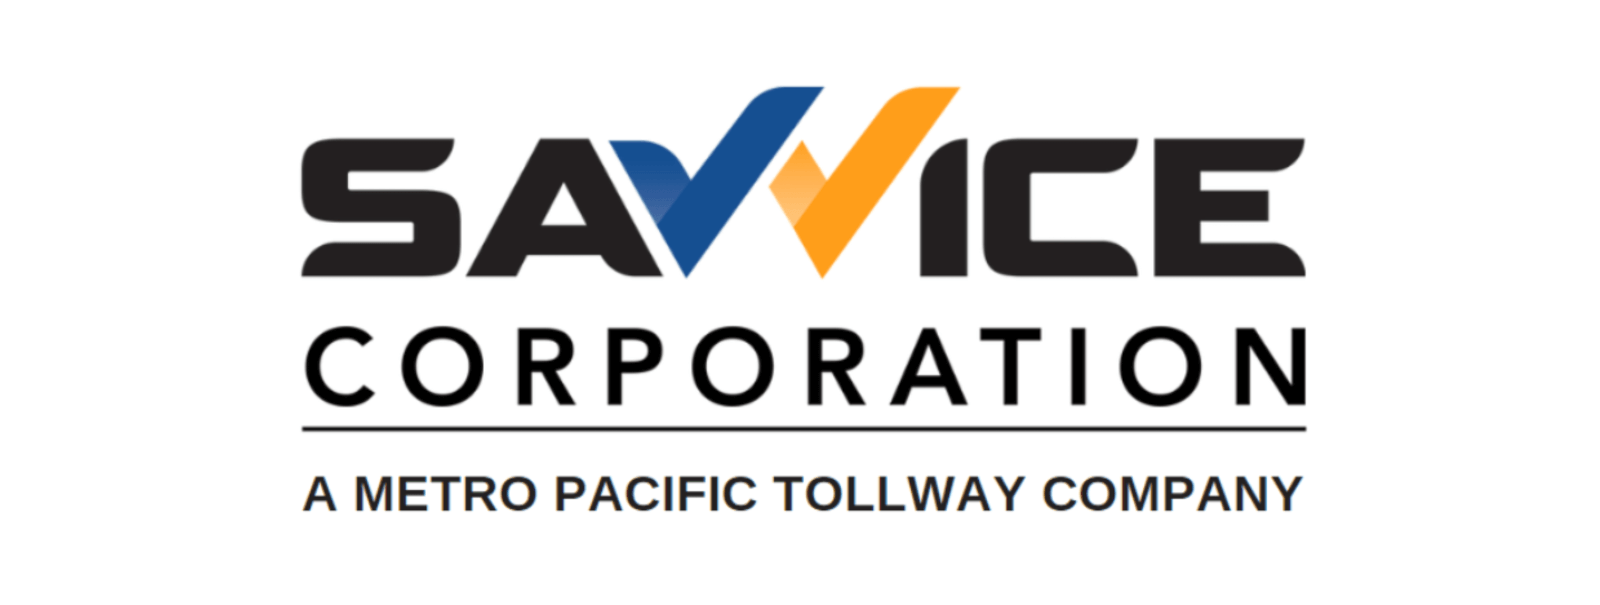 Savvice MPT Mobility Corporation Logo